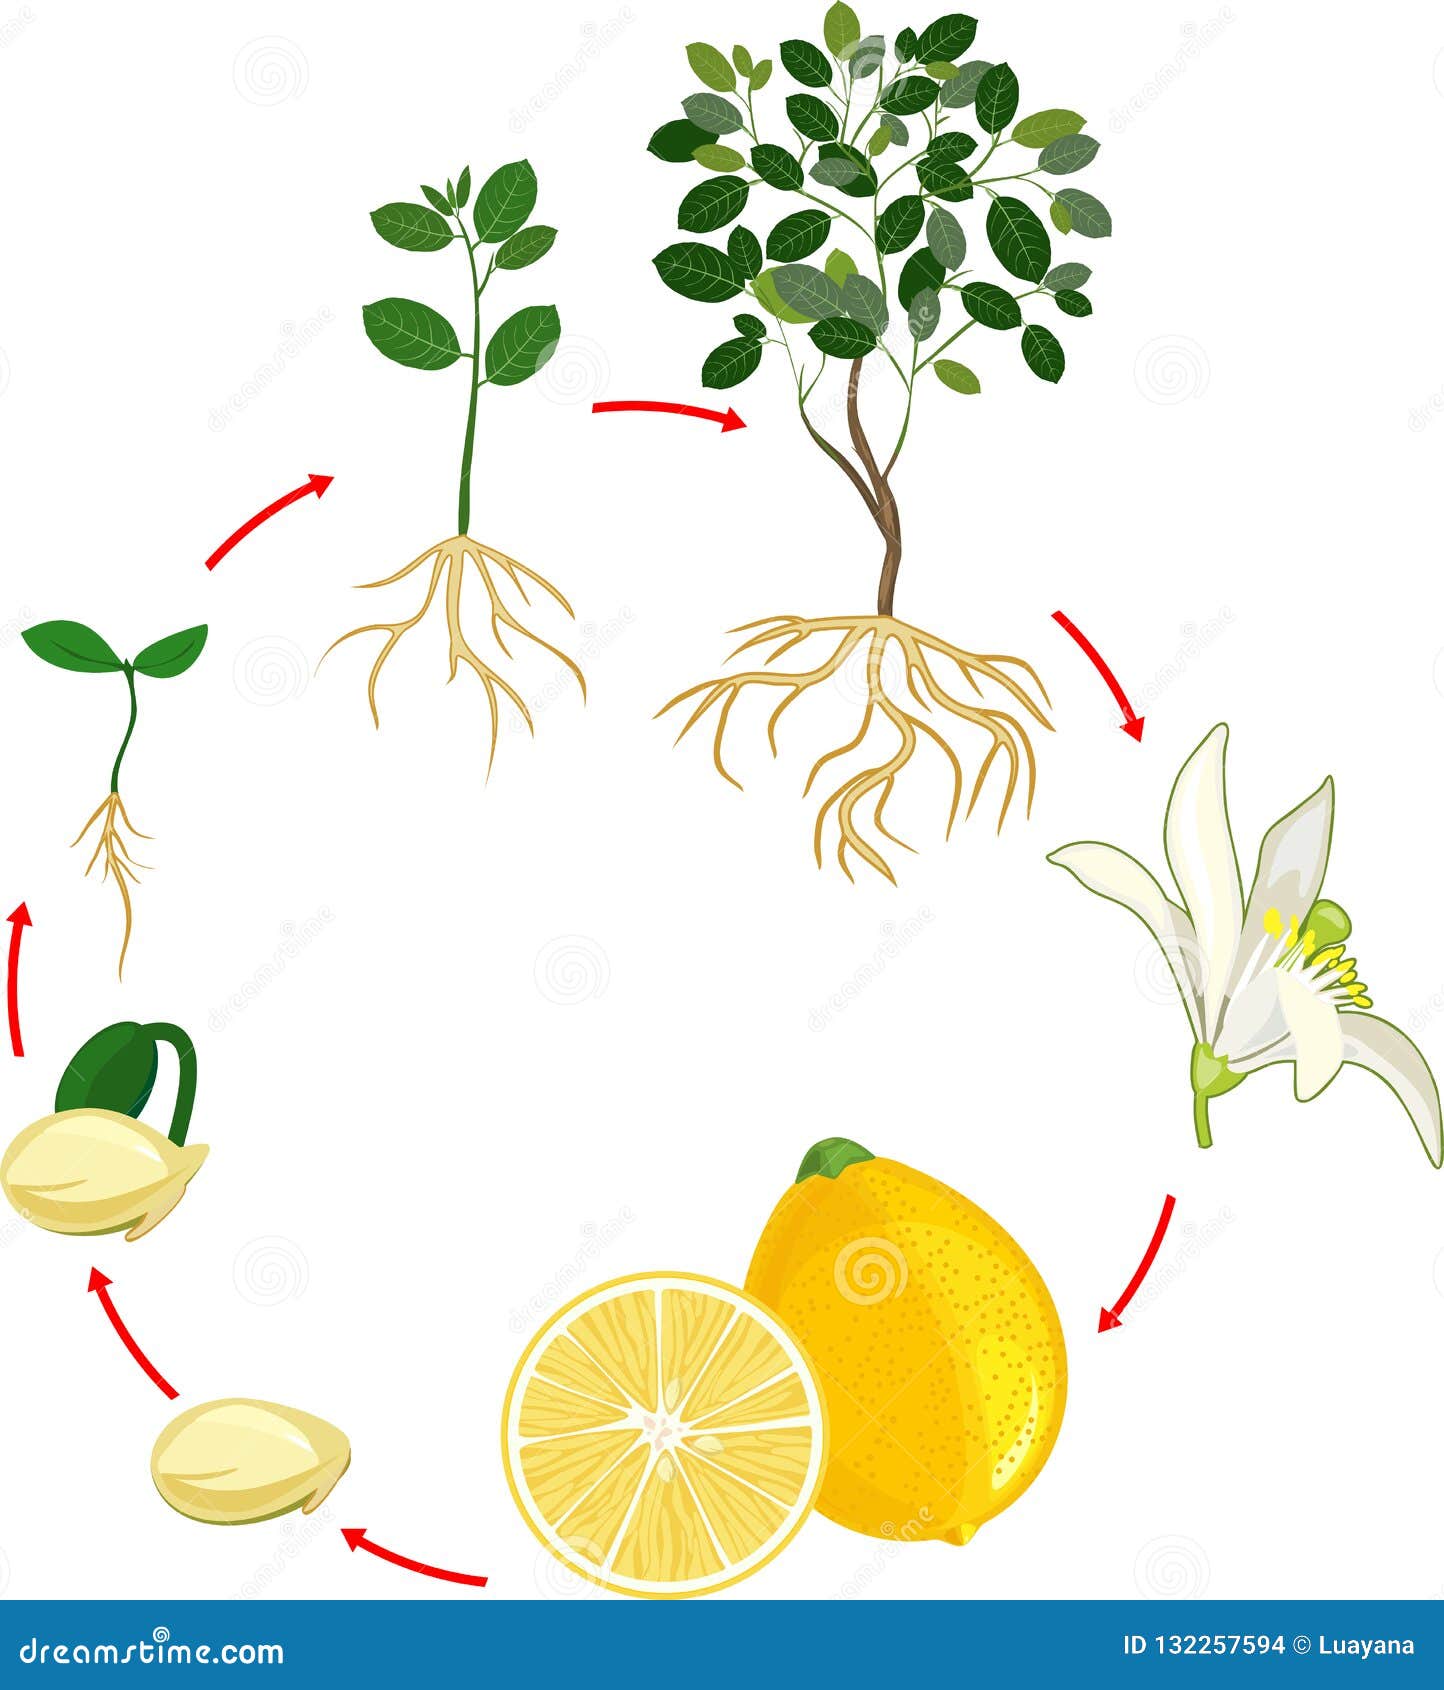 Жизненный цикл овощных растений по маркову. Лимонной дерево цикл. Этапы роста лимонного дерева. Цикл роста лимона для дошкольников. Цикл развития растений для детей.